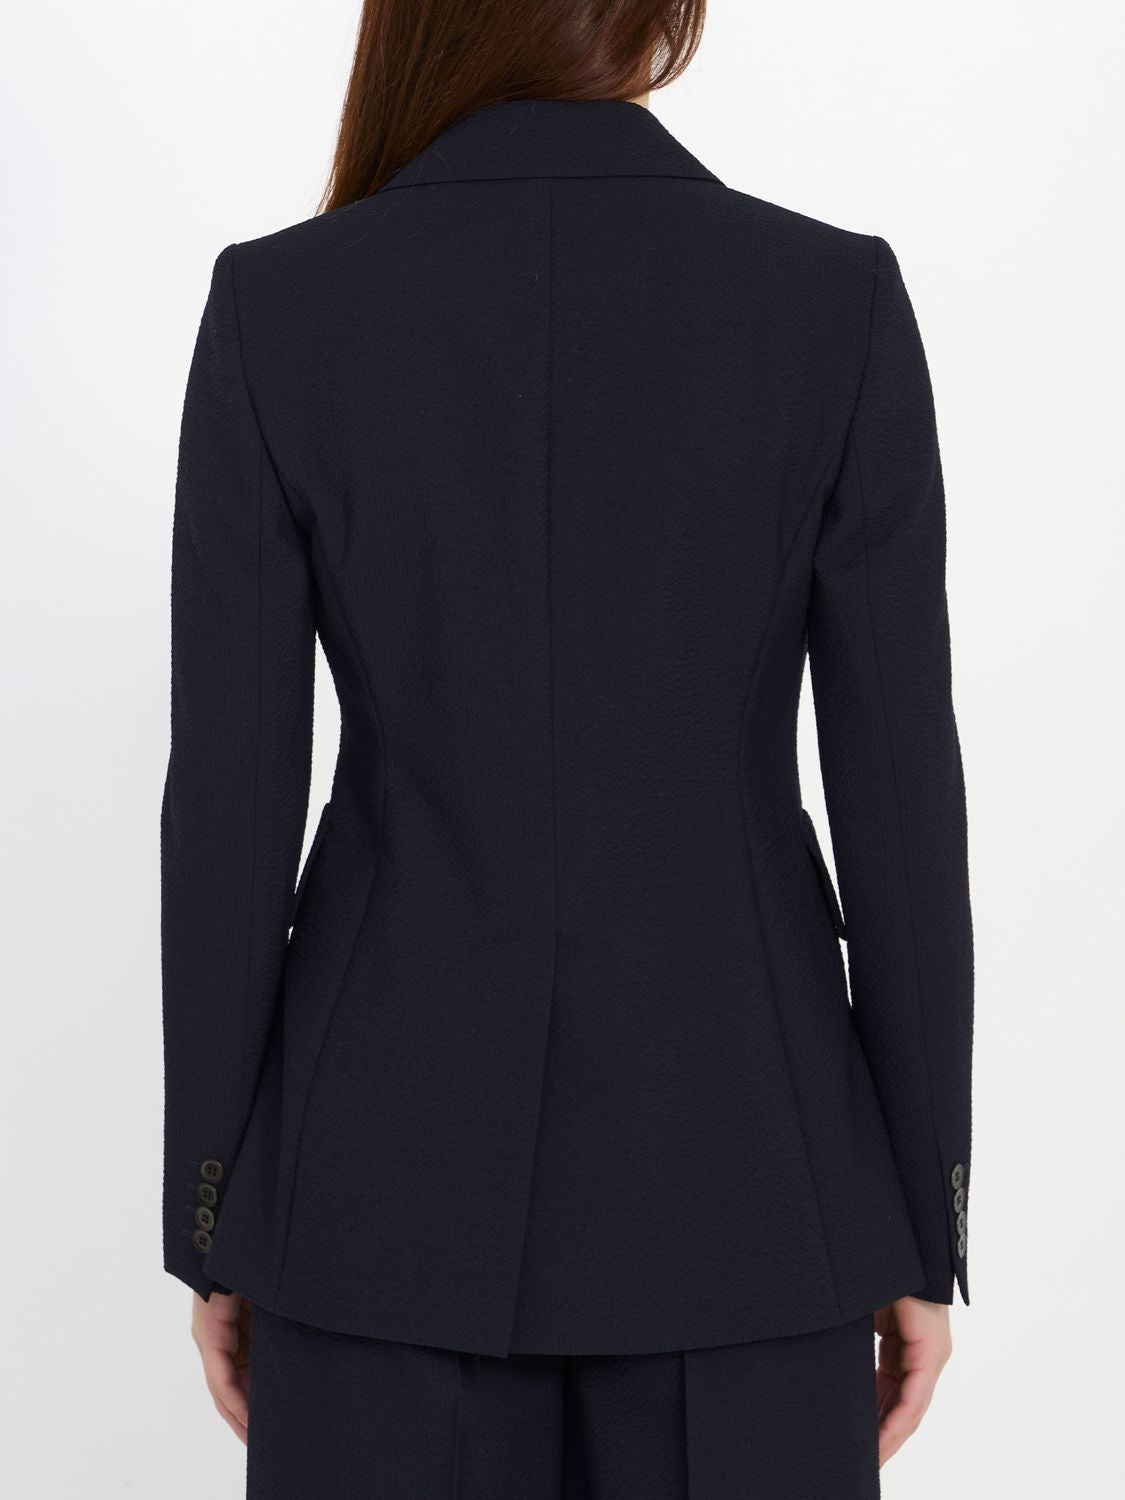 Áo khoác Albero màu xanh navy cho phụ nữ - Bộ sưu tập SS24